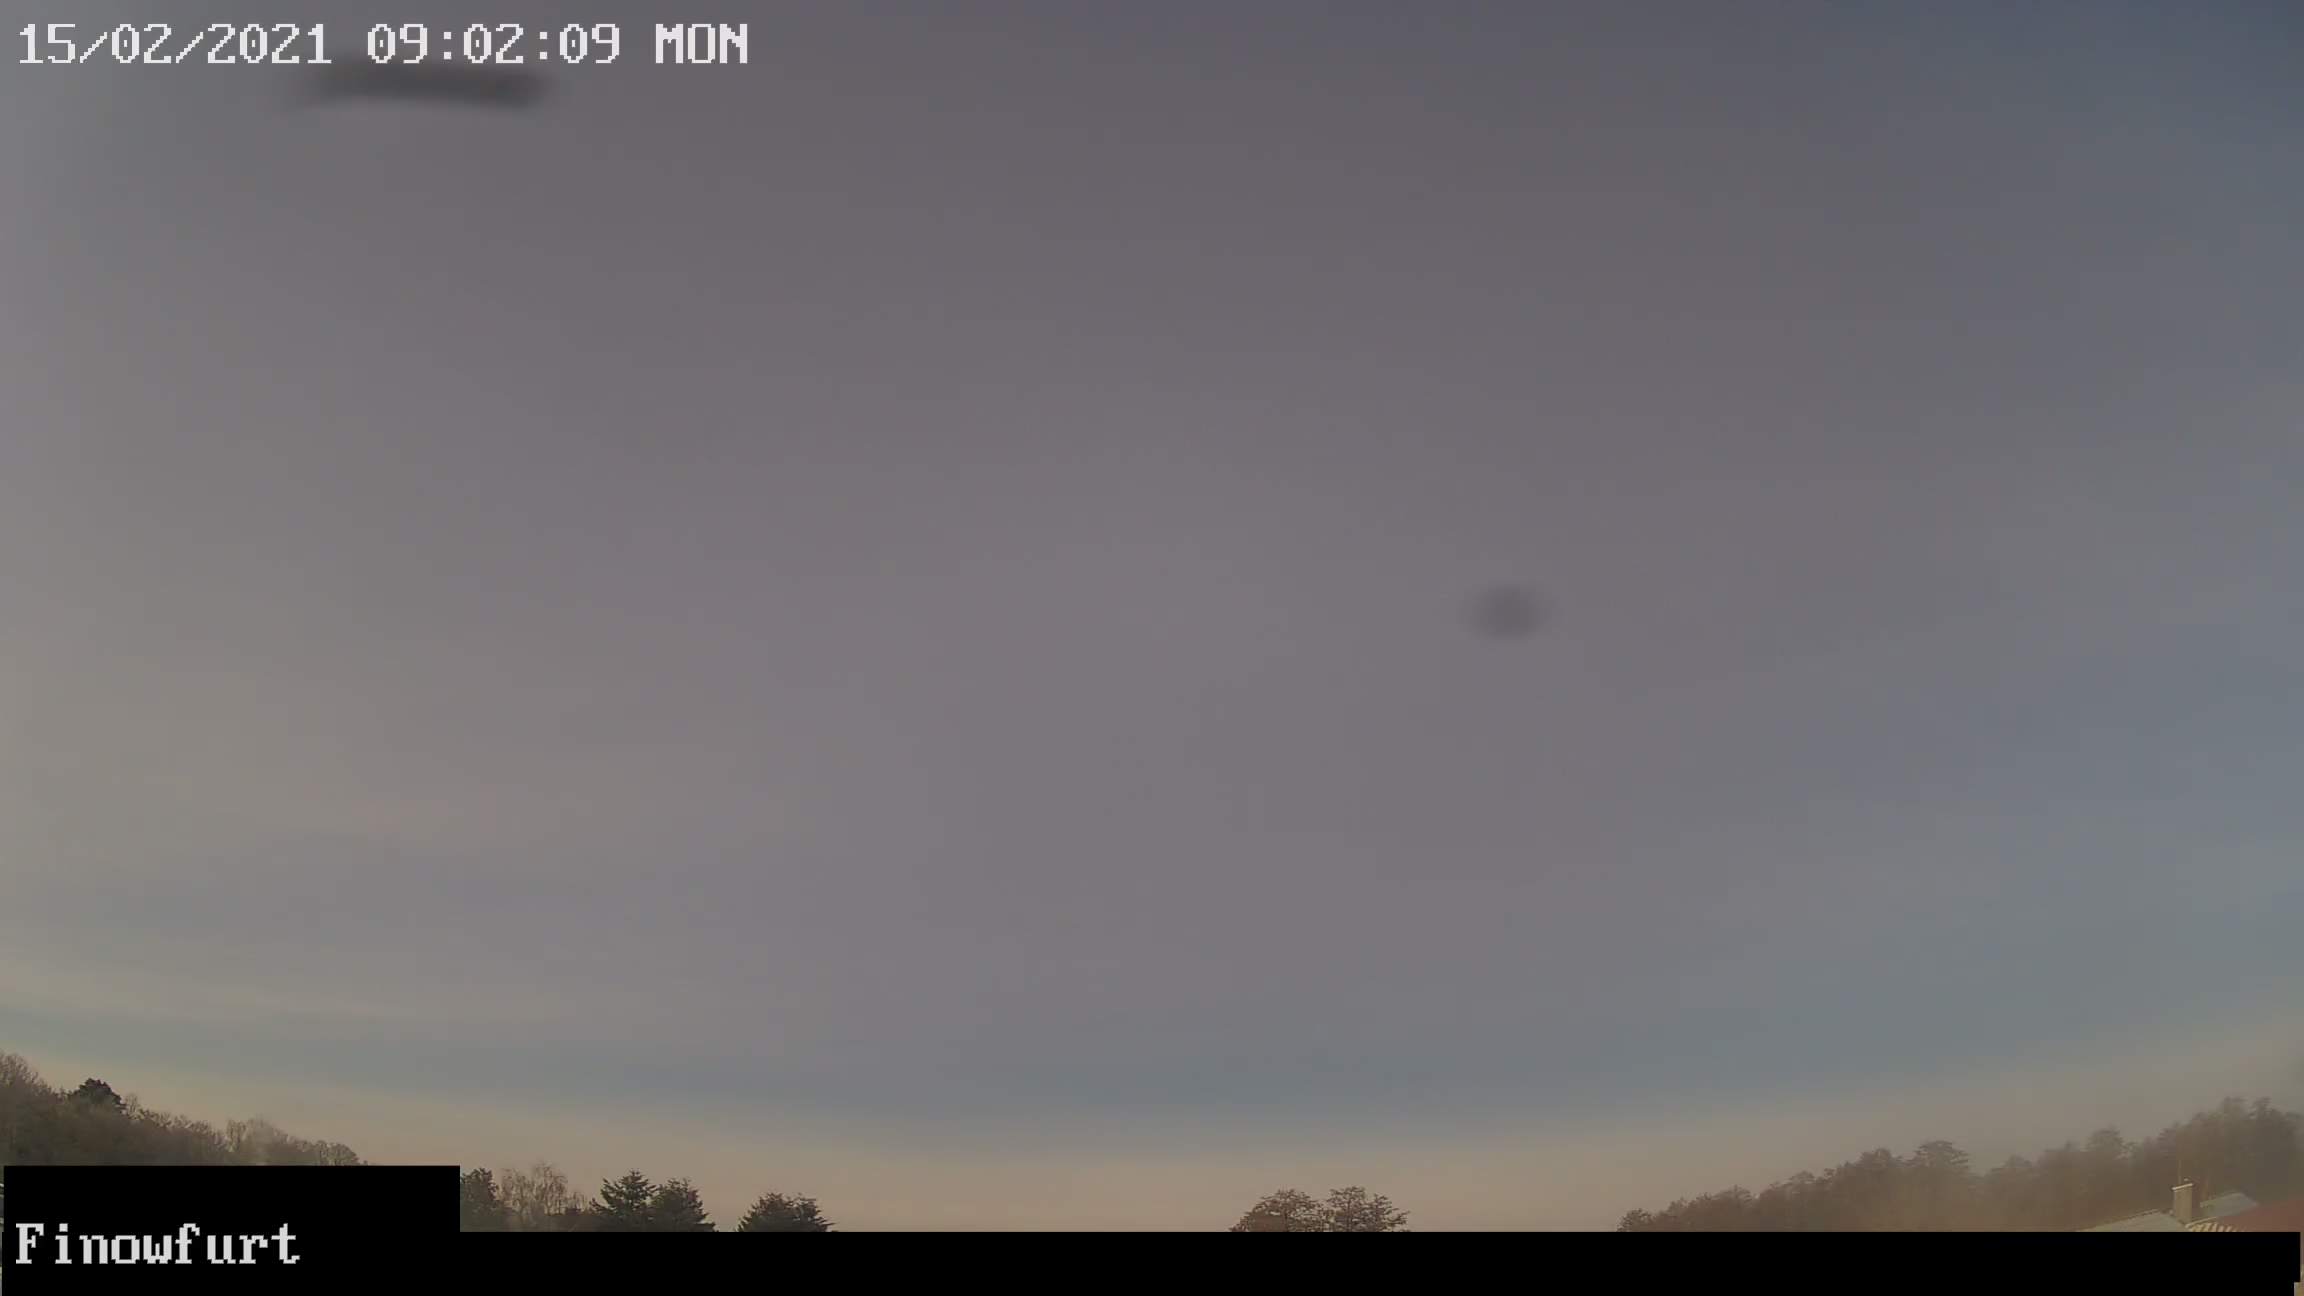 Webcam-Bild von 8 Uhr